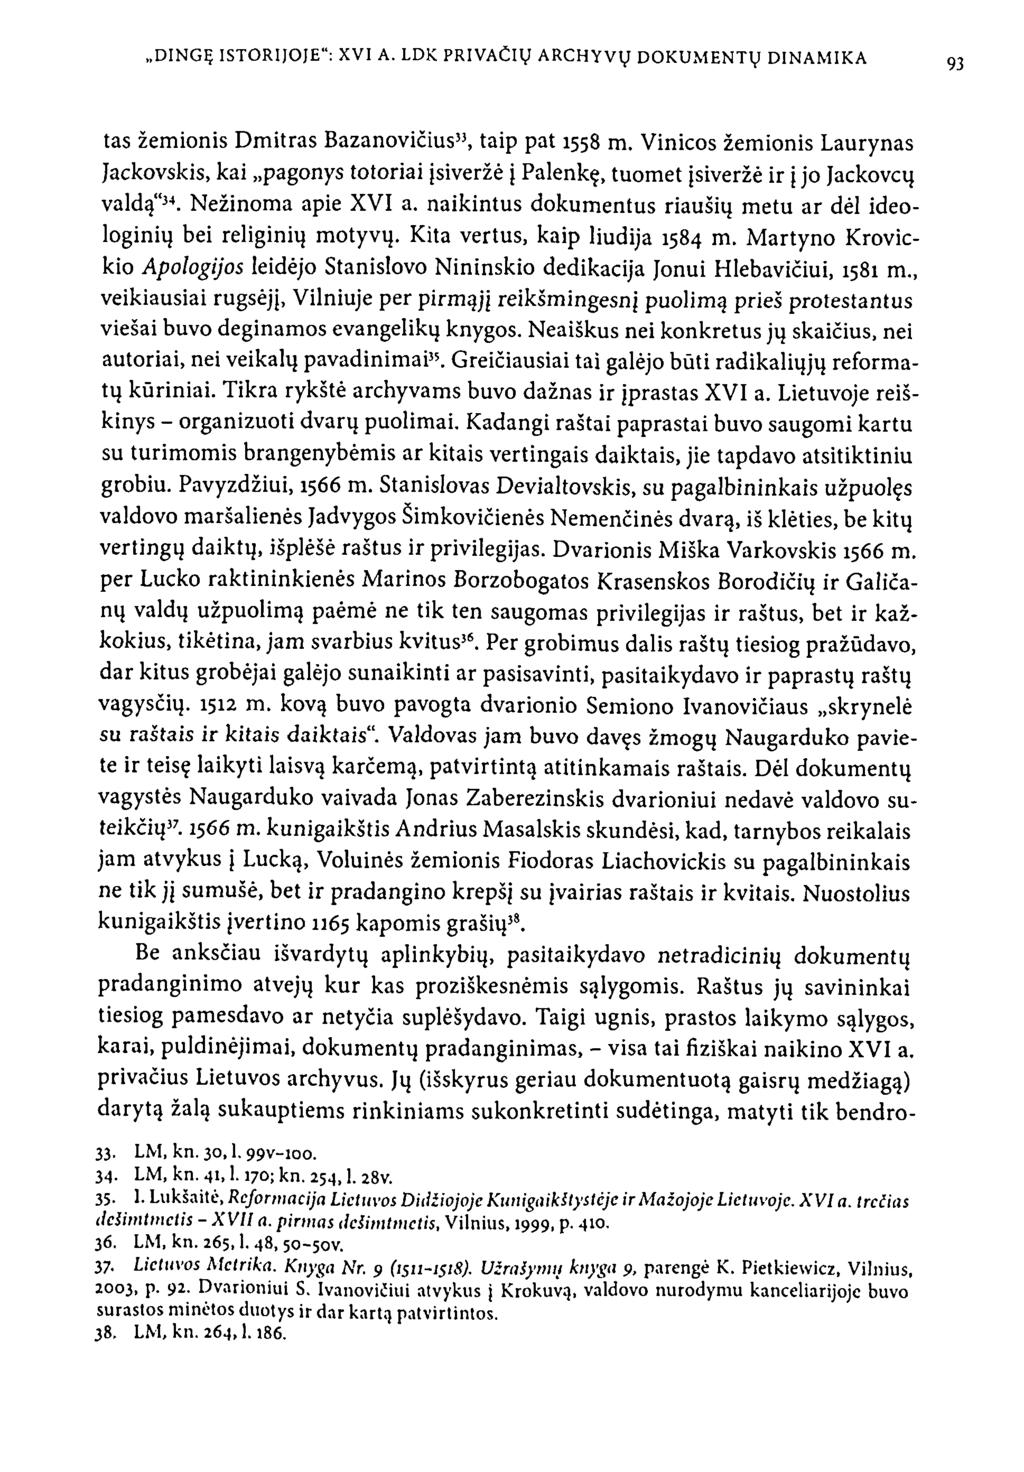 tas žemionis Dmitras Bazanovičius 33, taip pat 1558 m. Vinicos žemionis Laurynas Jackovskis, kai pagonys totoriai įsiveržė į Palenkę, tuomet įsiveržė ir į jo Jackovcų valdą" 34. Nežinoma apie XVI a.